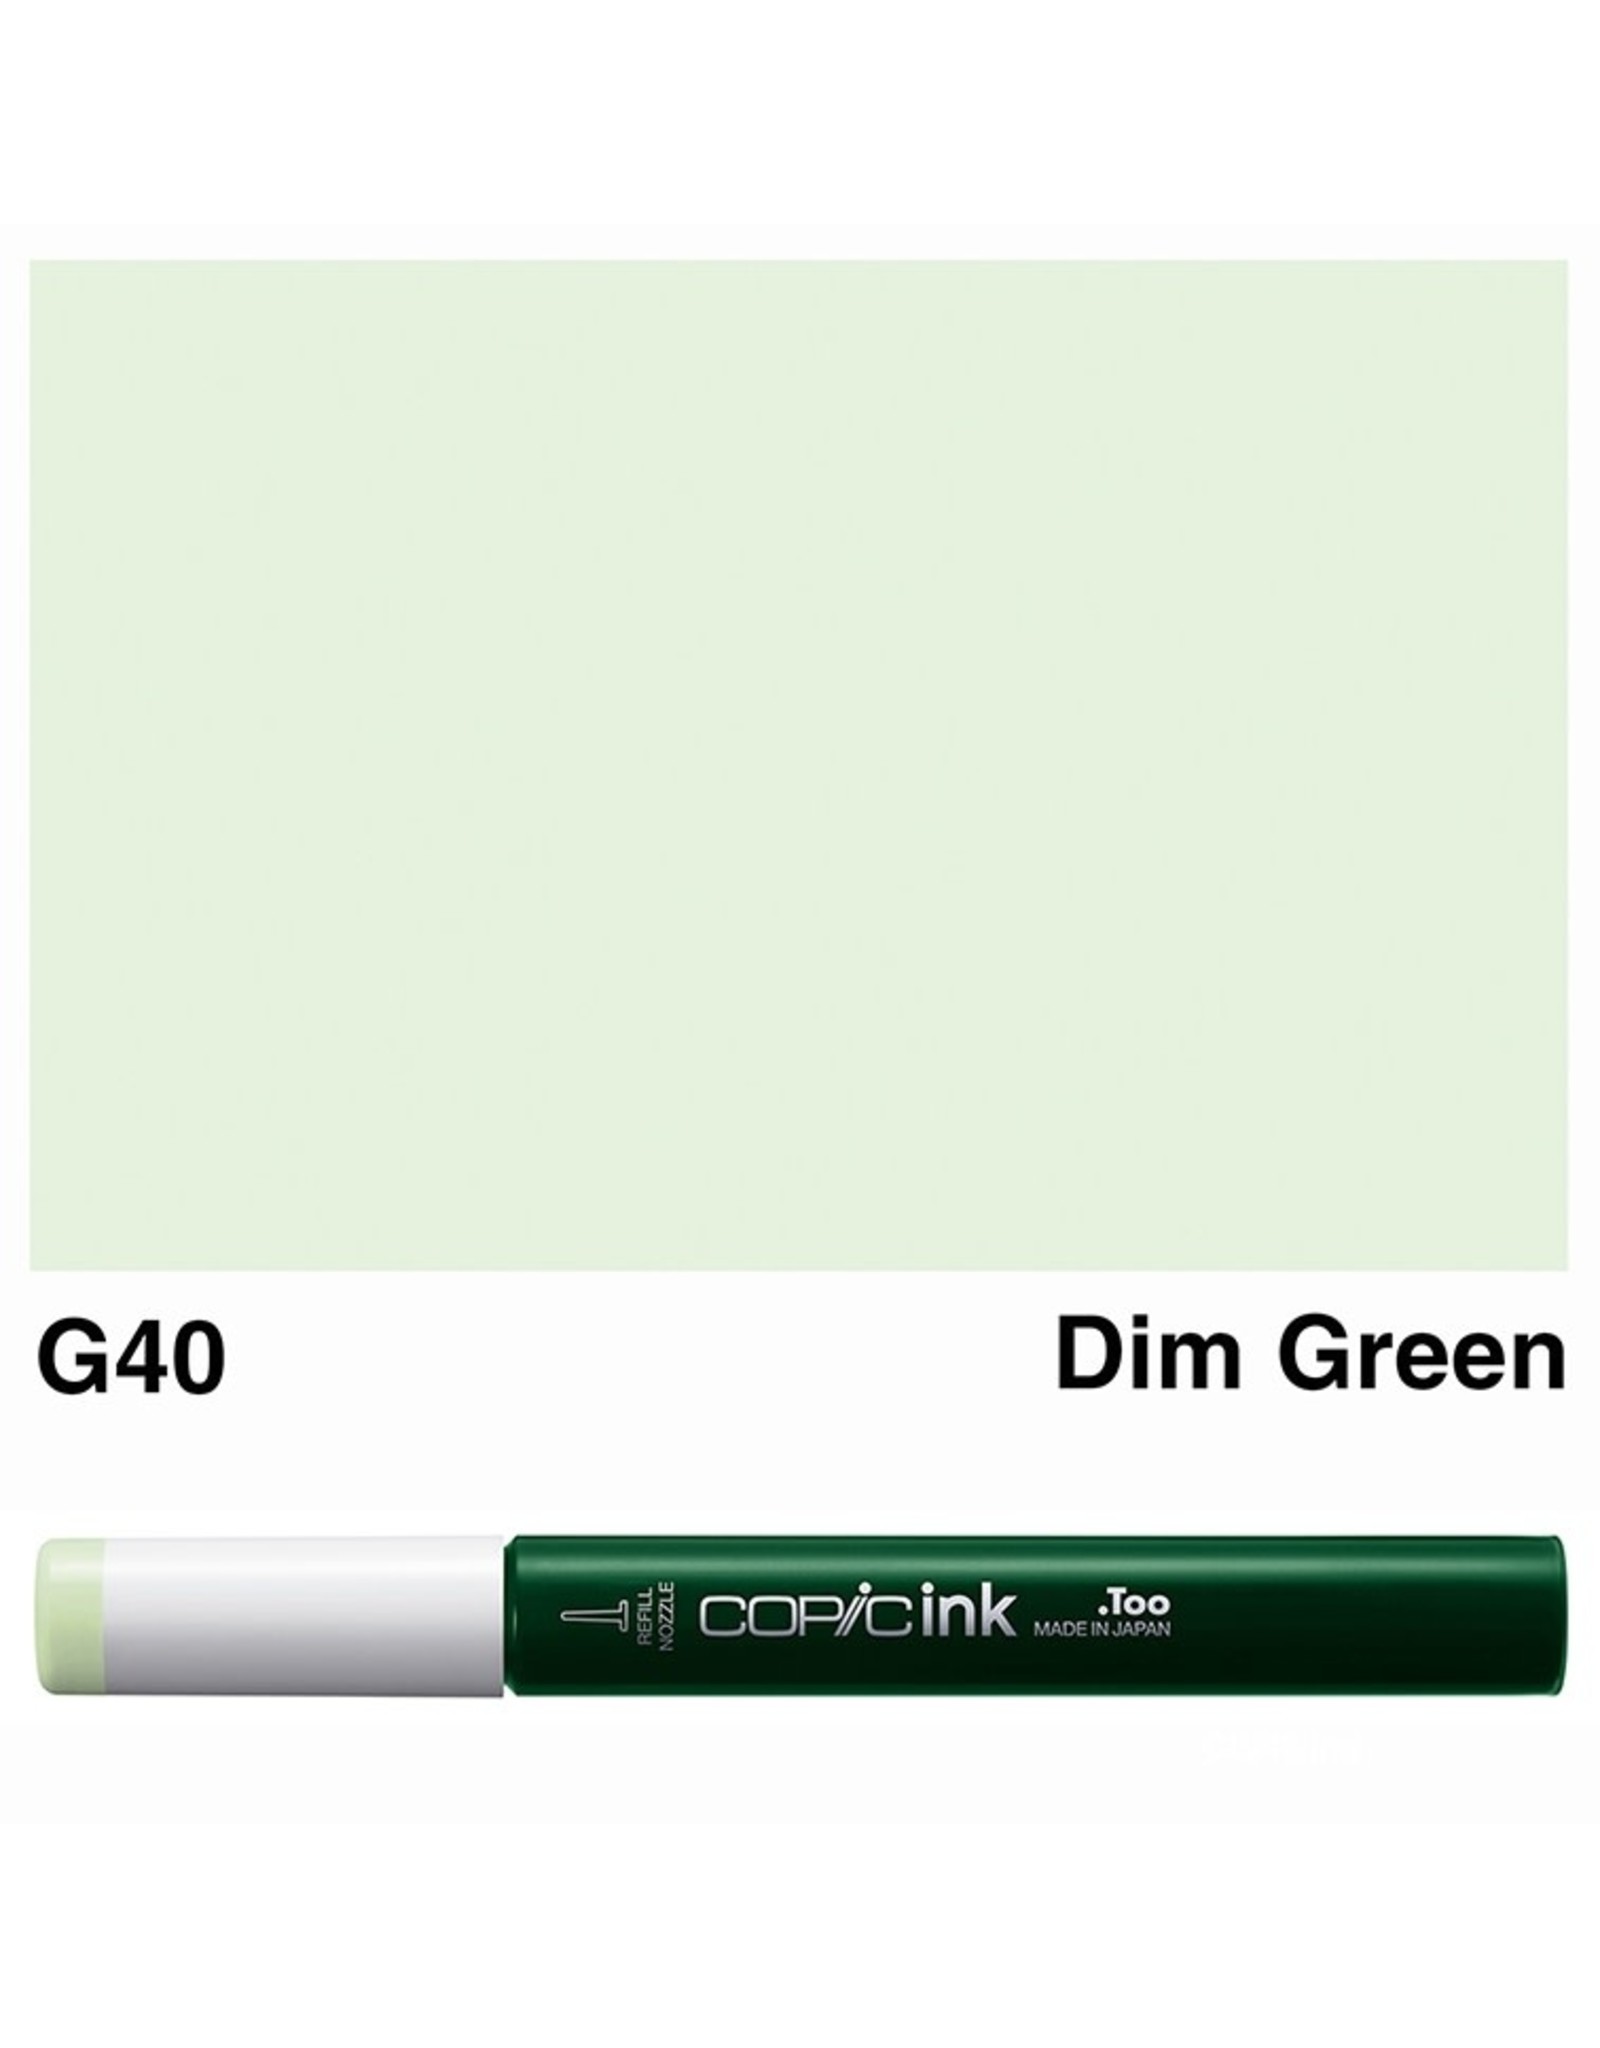 COPIC COPIC G40 DIM GREEN REFILL